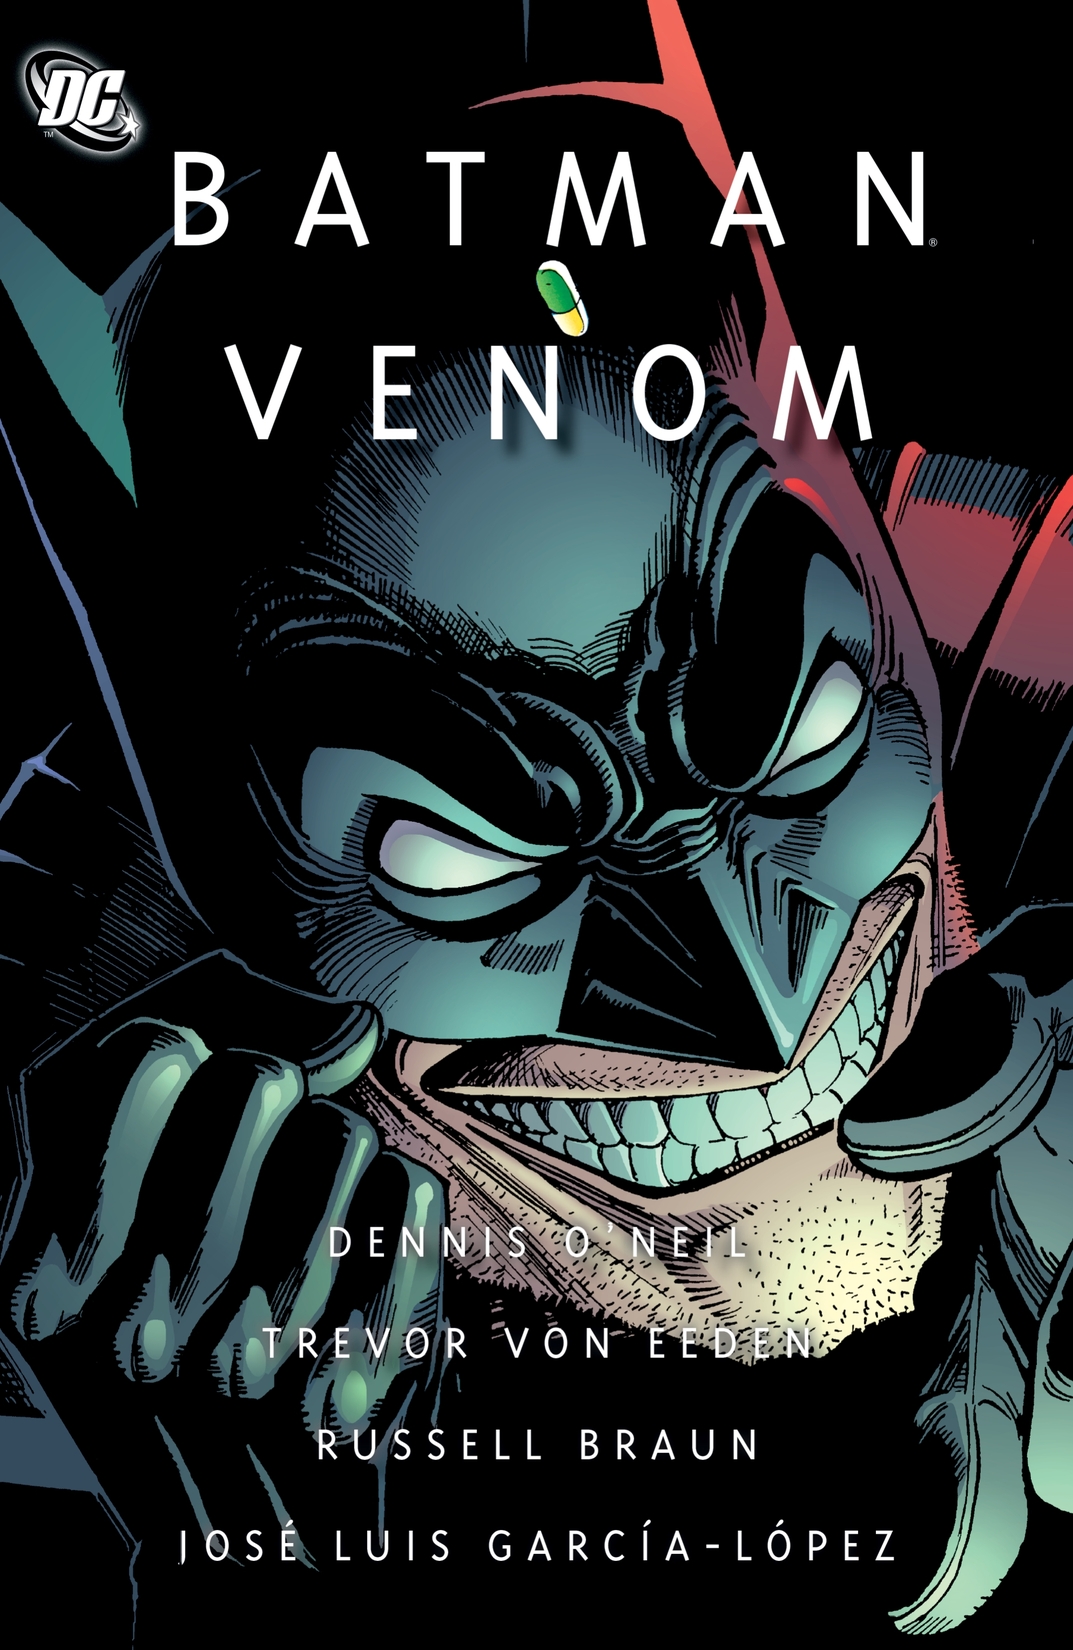 Batman: Venom preview images